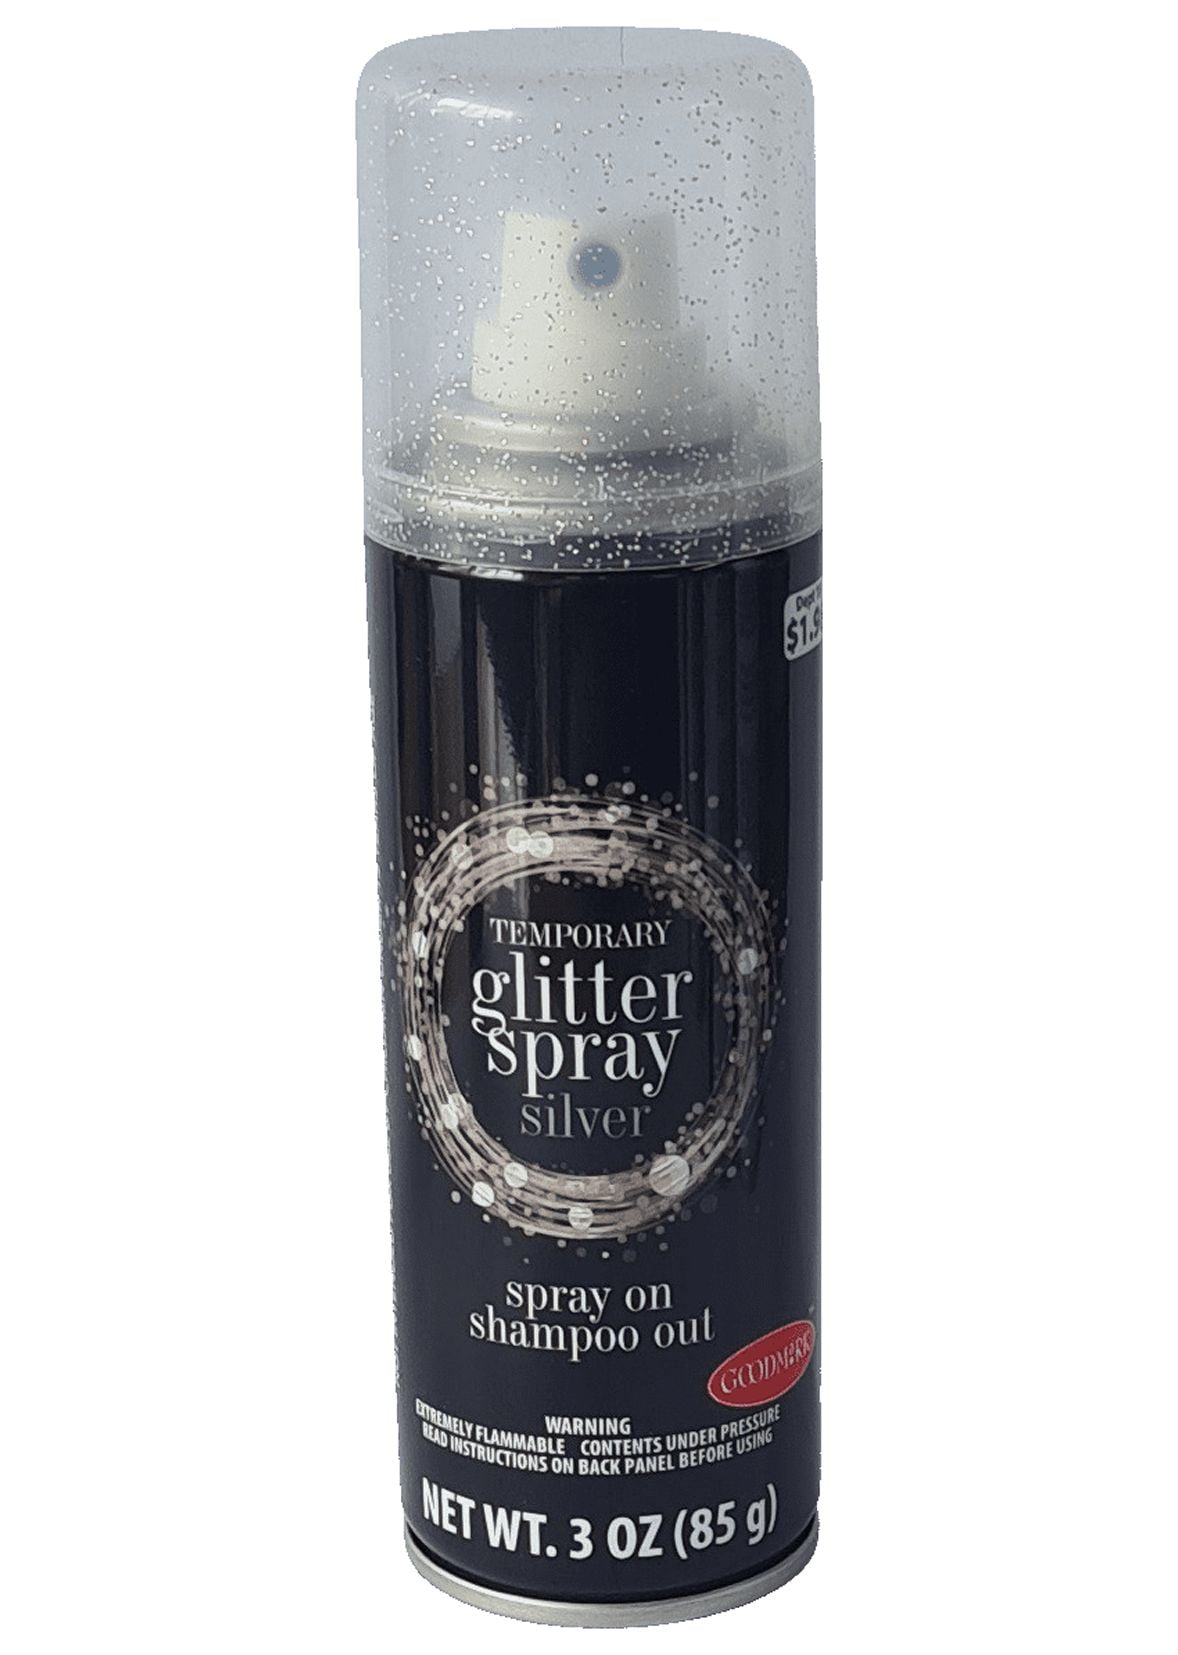 Goodmark Halloween Makeup Glitter Spray, Silver, Net Wt. 3oz (85g)